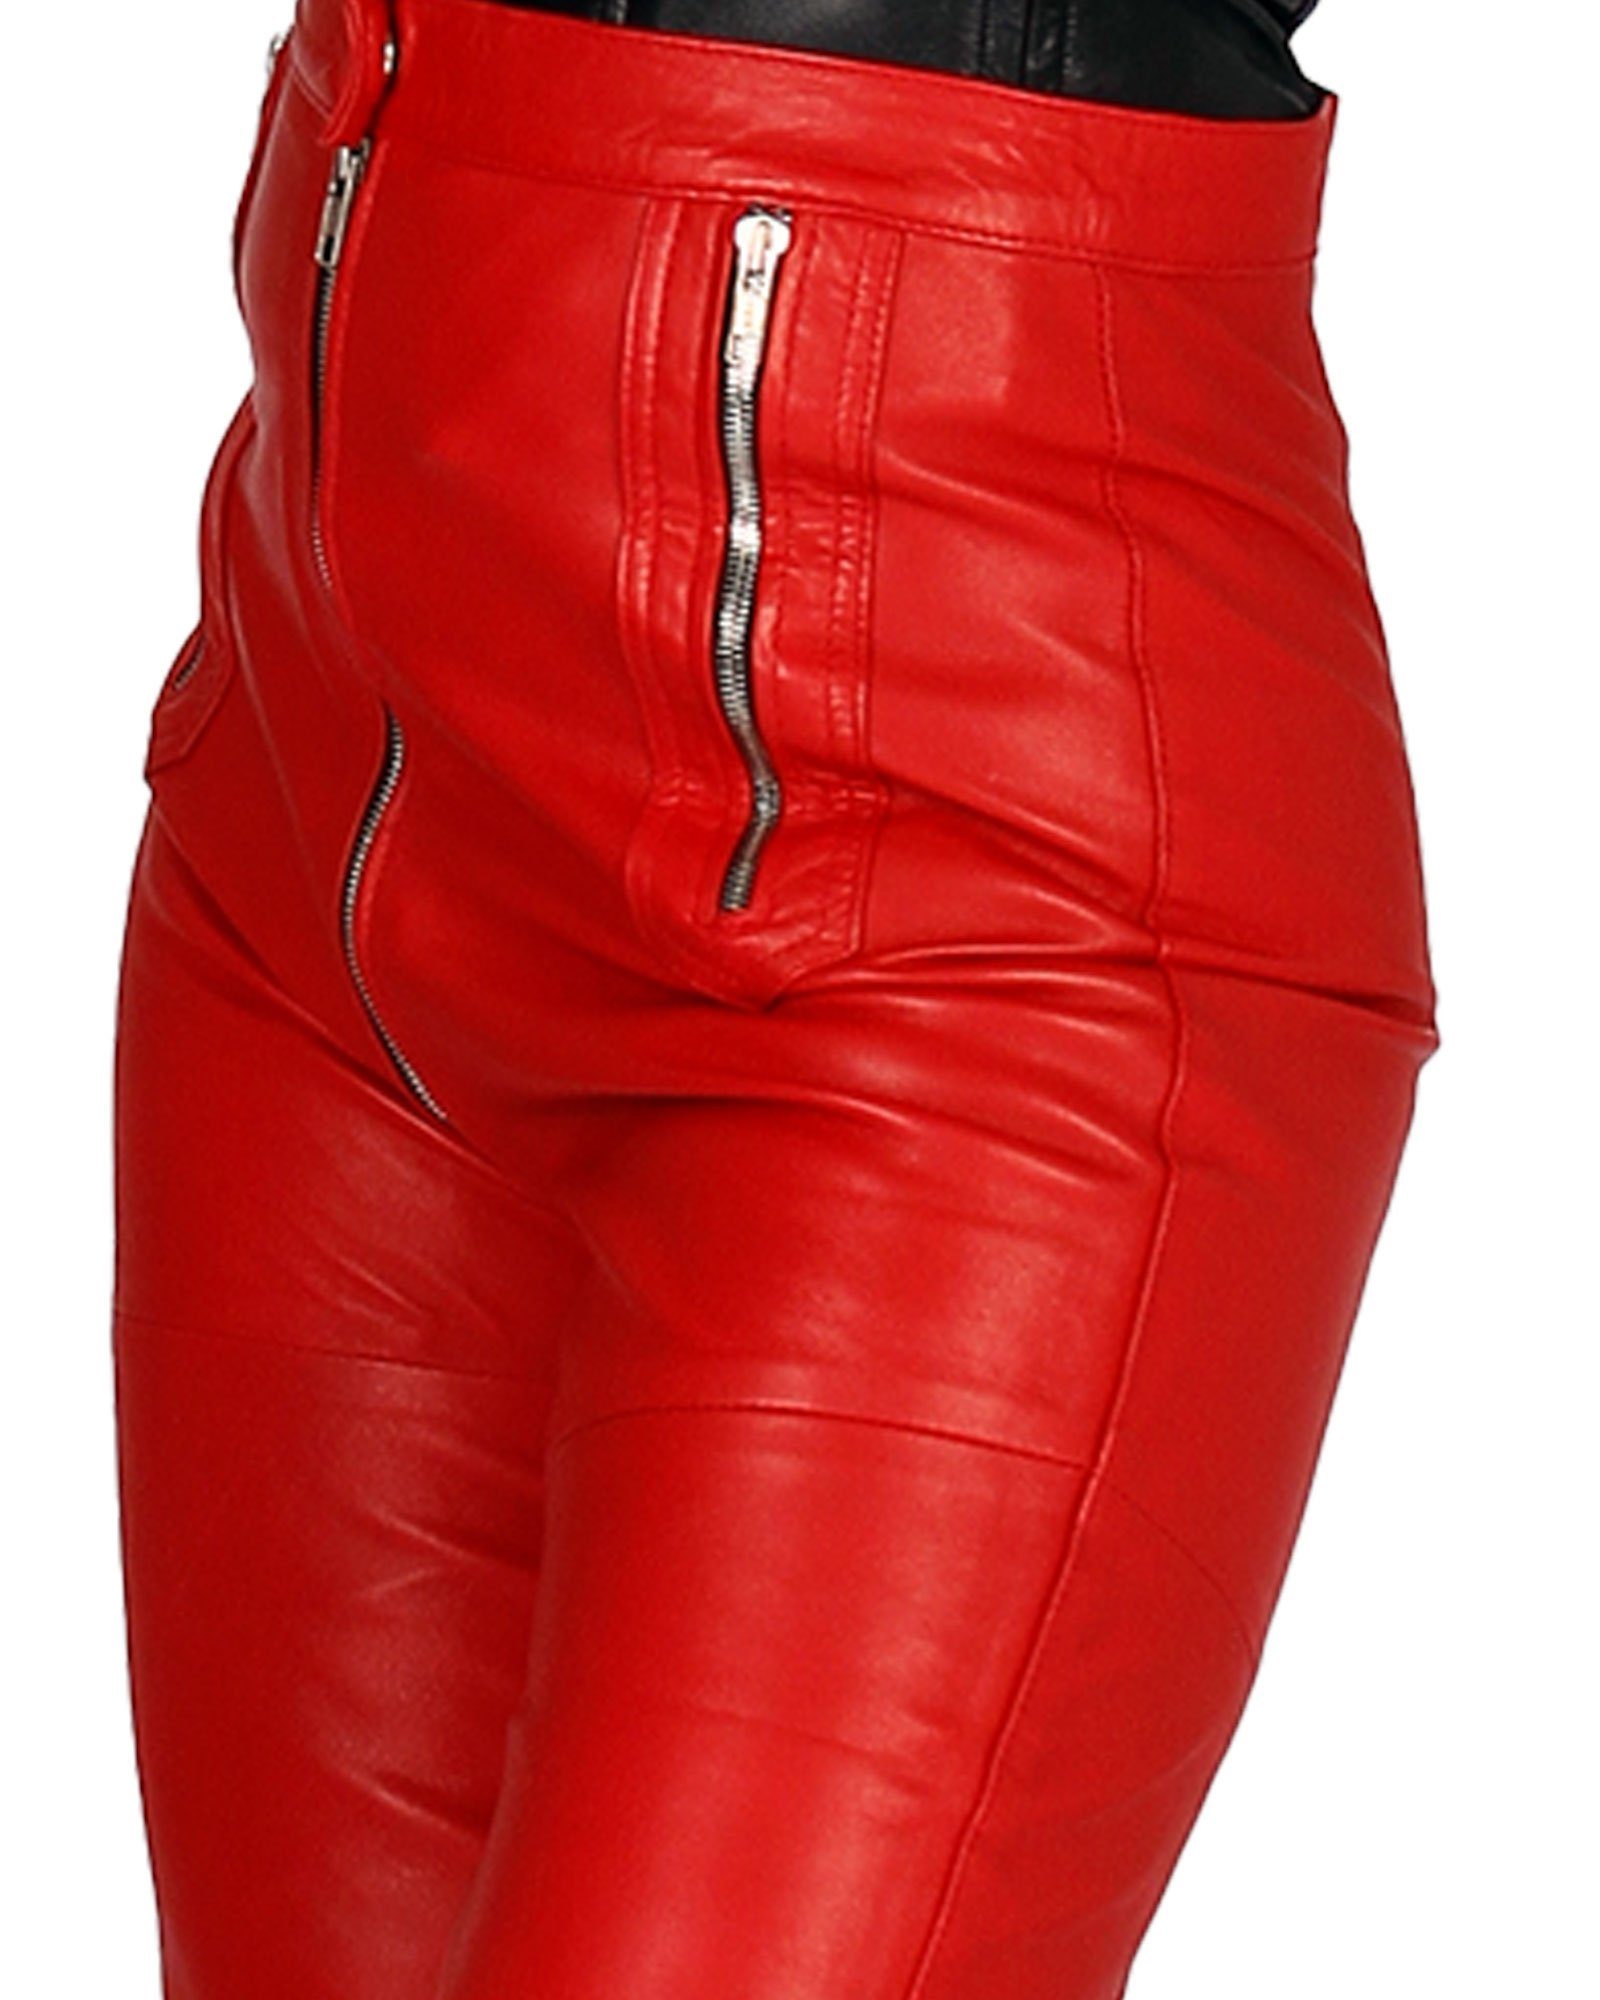 Lederhose Leder Schrittreißverschluss Rot Echtes Lederhose Kim Fetish-Design Schrittreißverschluß